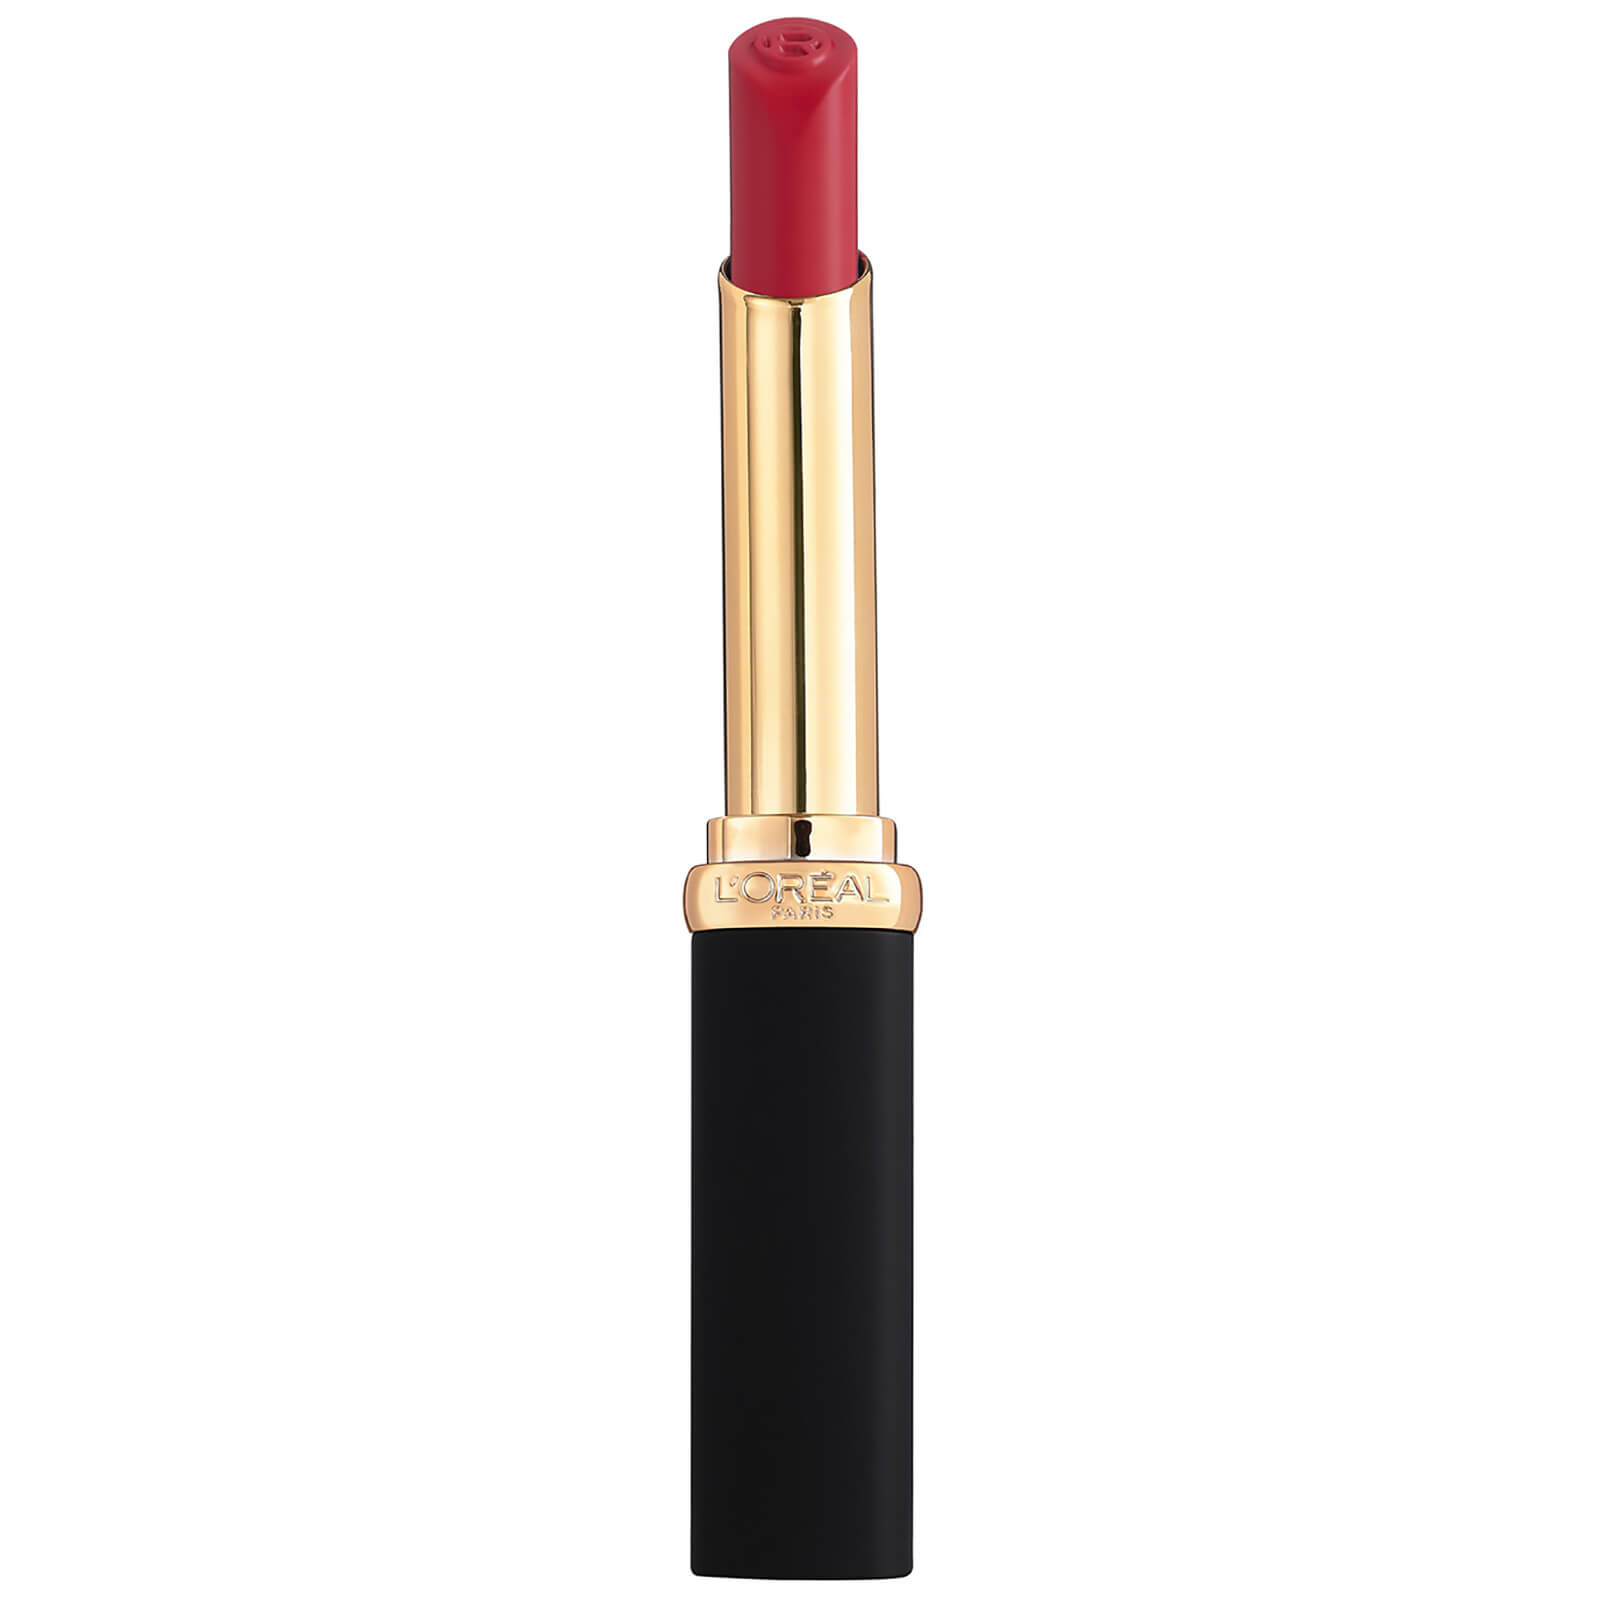 L'oréal Paris L'oreal Paris Colour Riche Intense Volume Matte Lipstick 25g (various Shades) - Rose Activist